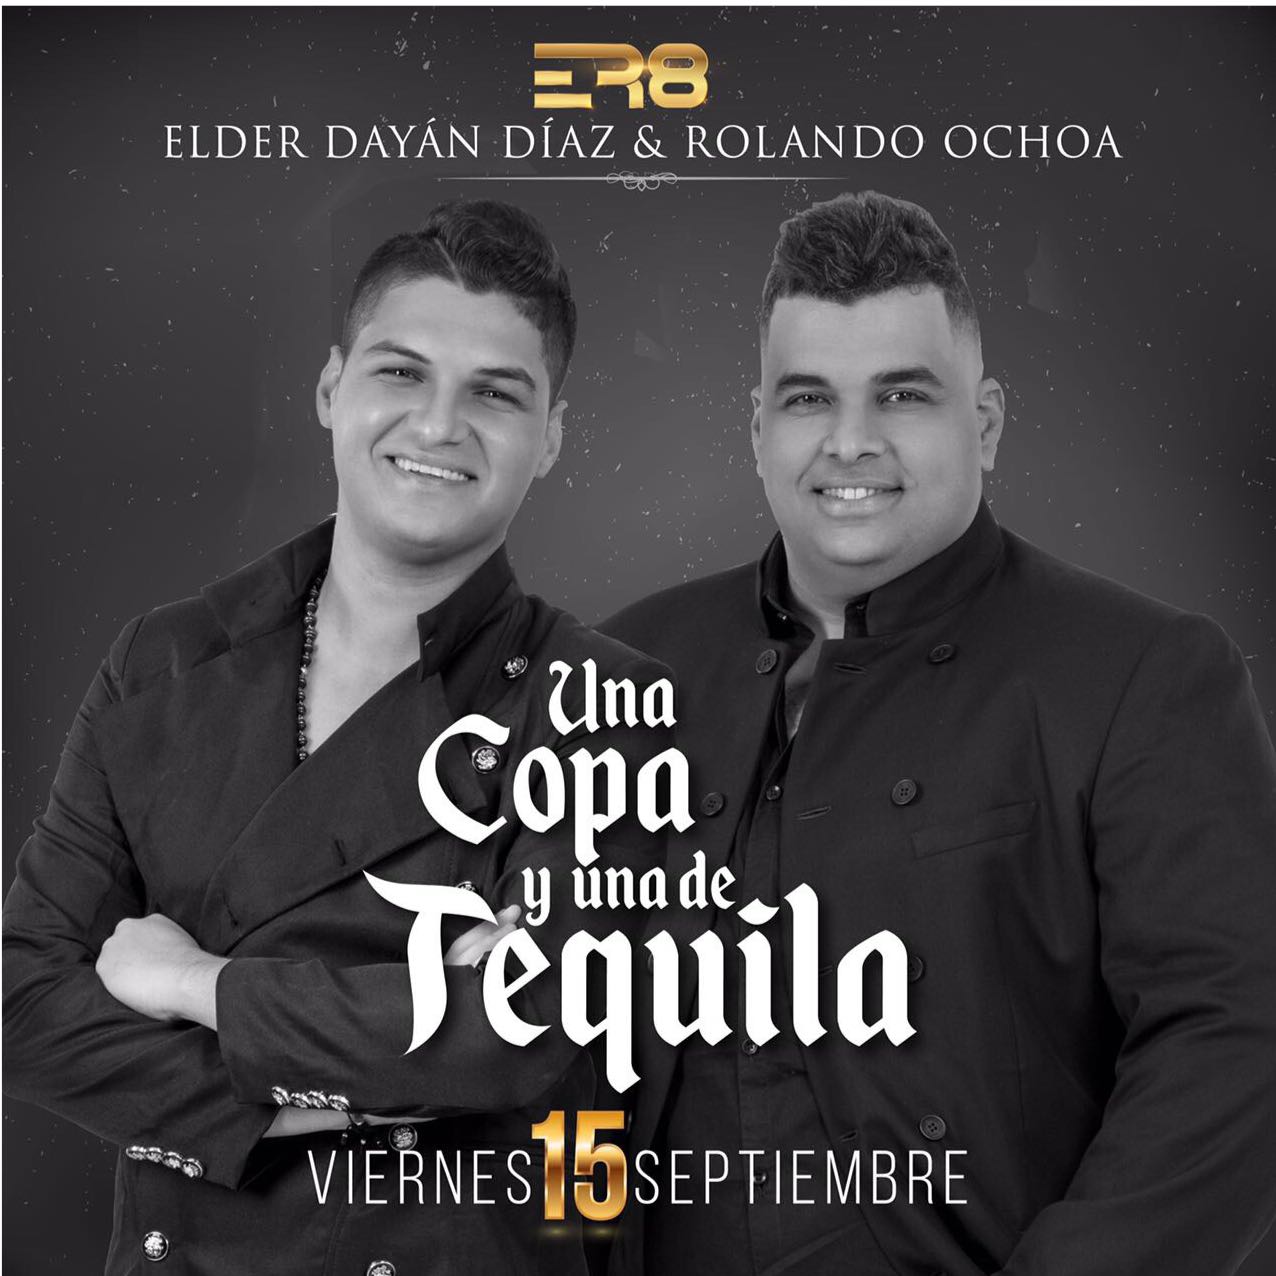 Elder Díaz y Rolando Ochoa Una Copa y una tequila